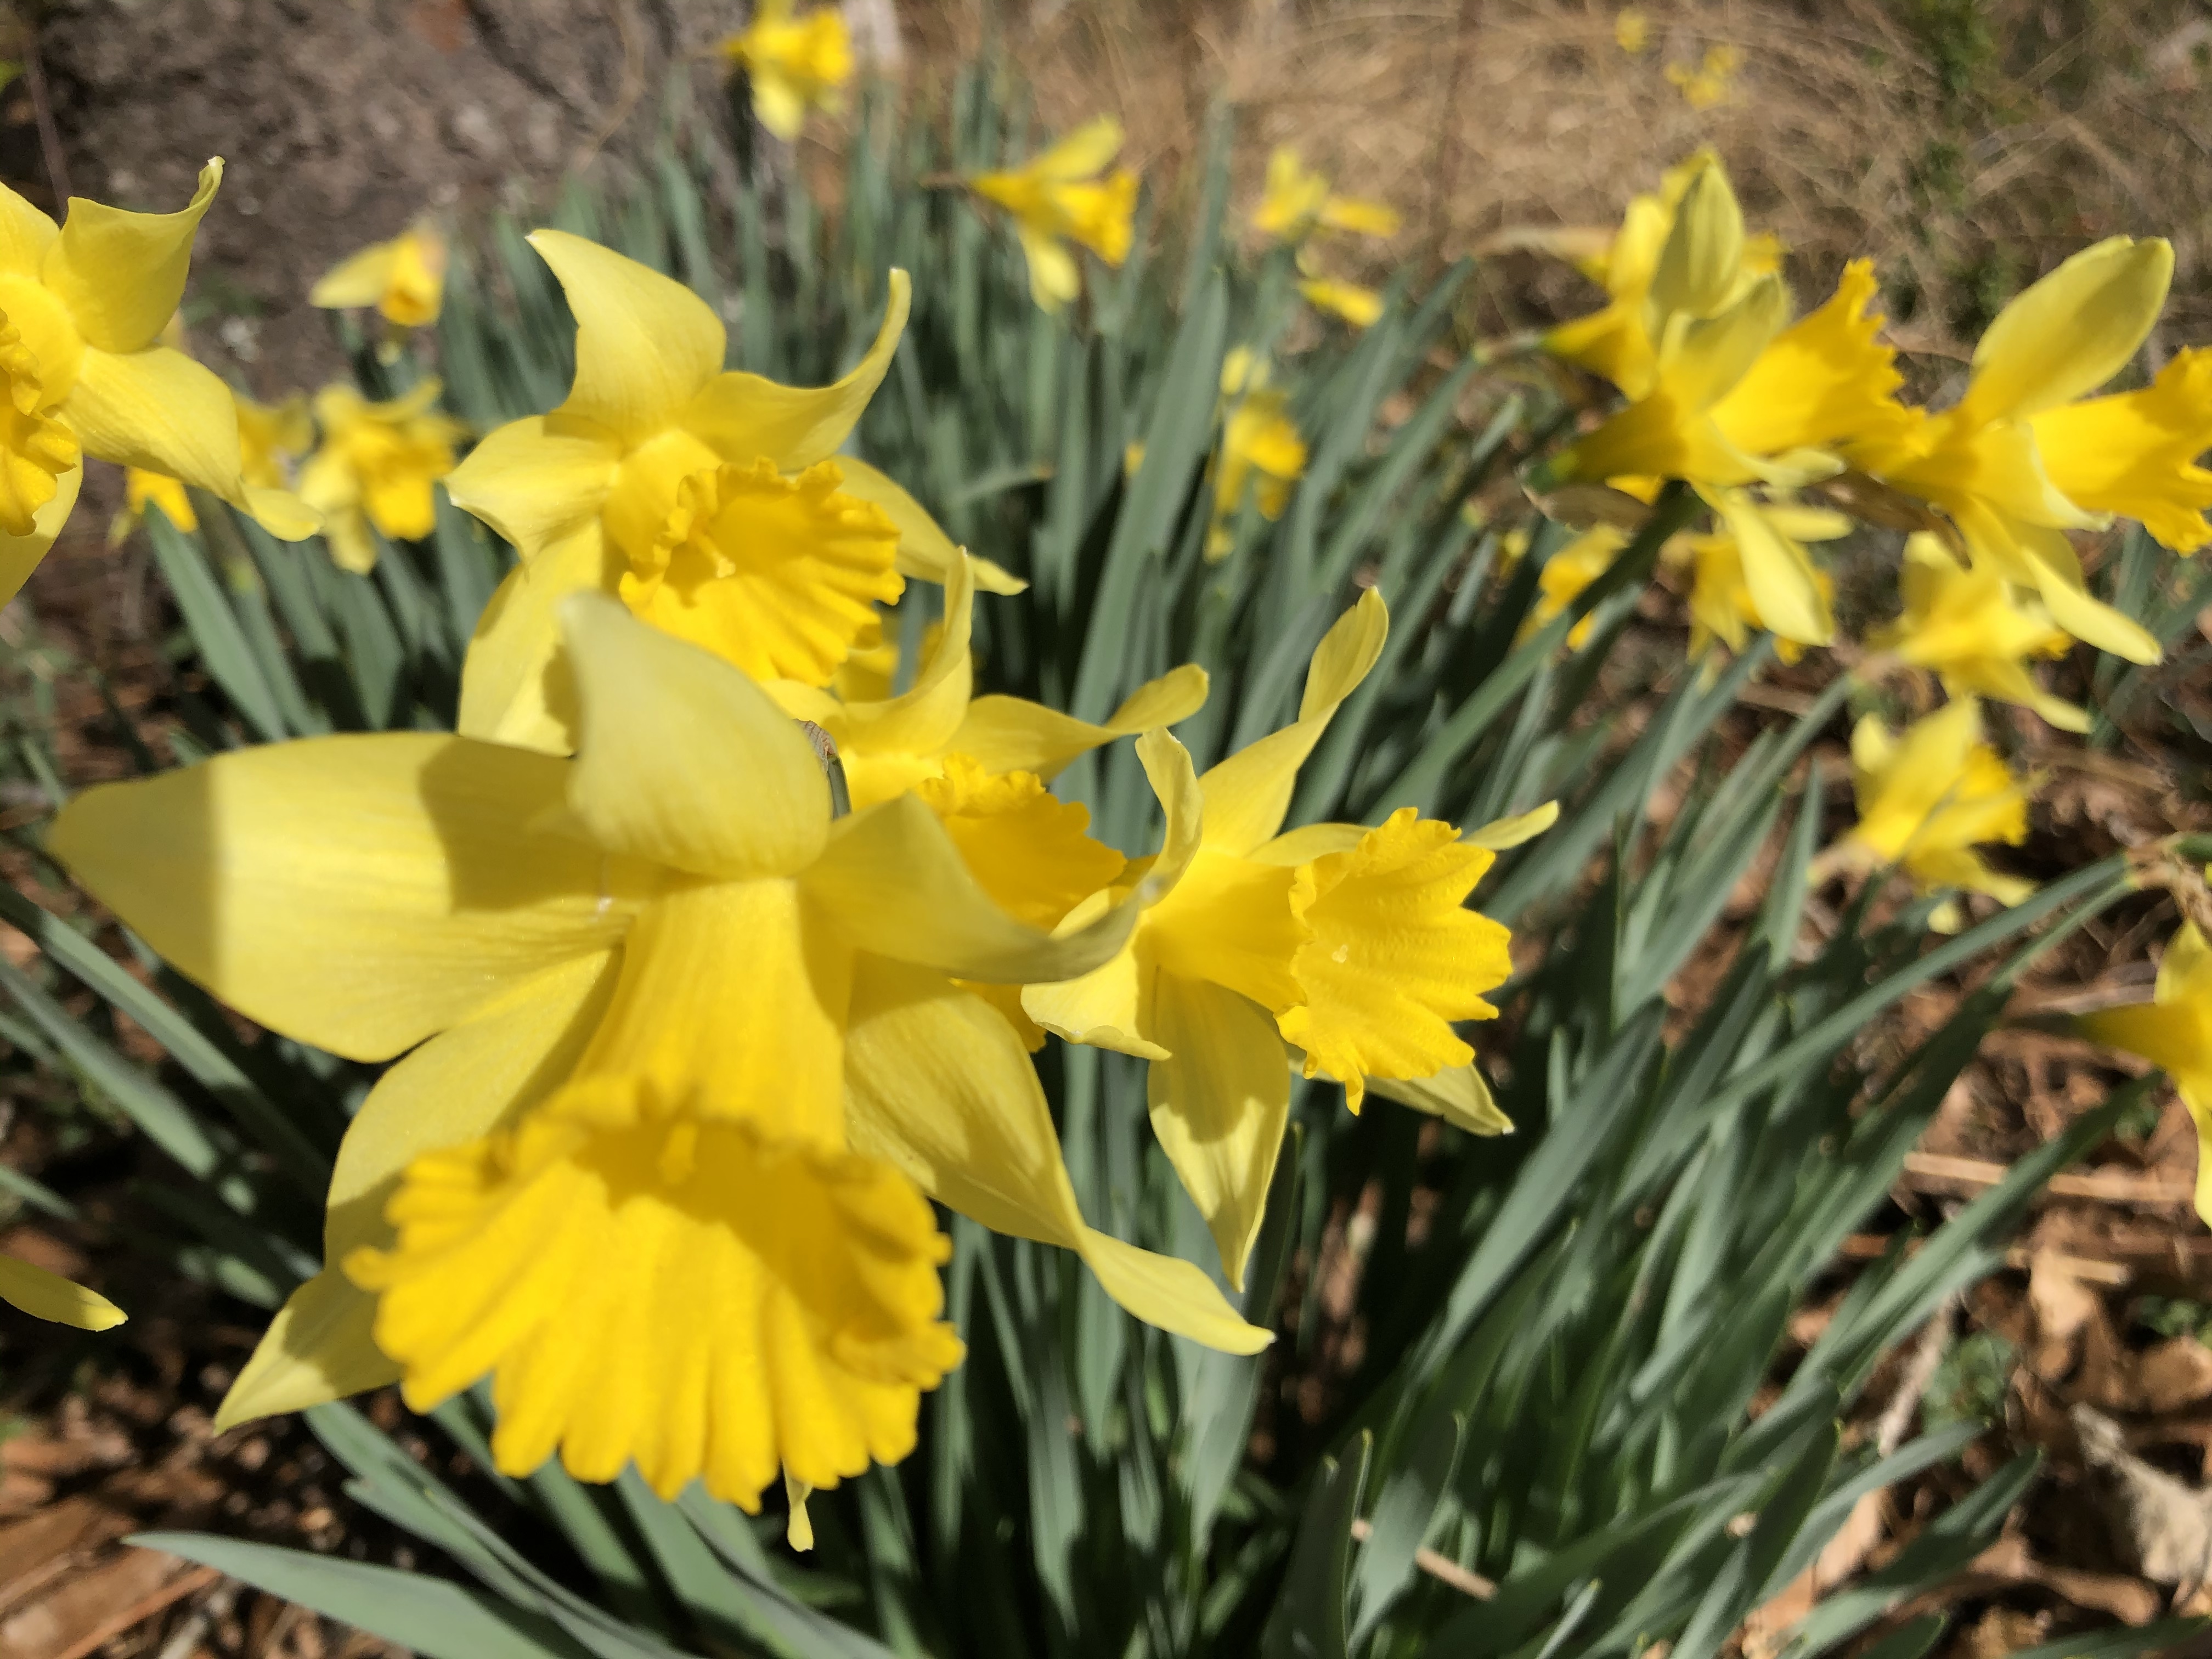 Yellow daffodil plants blooming in the sun